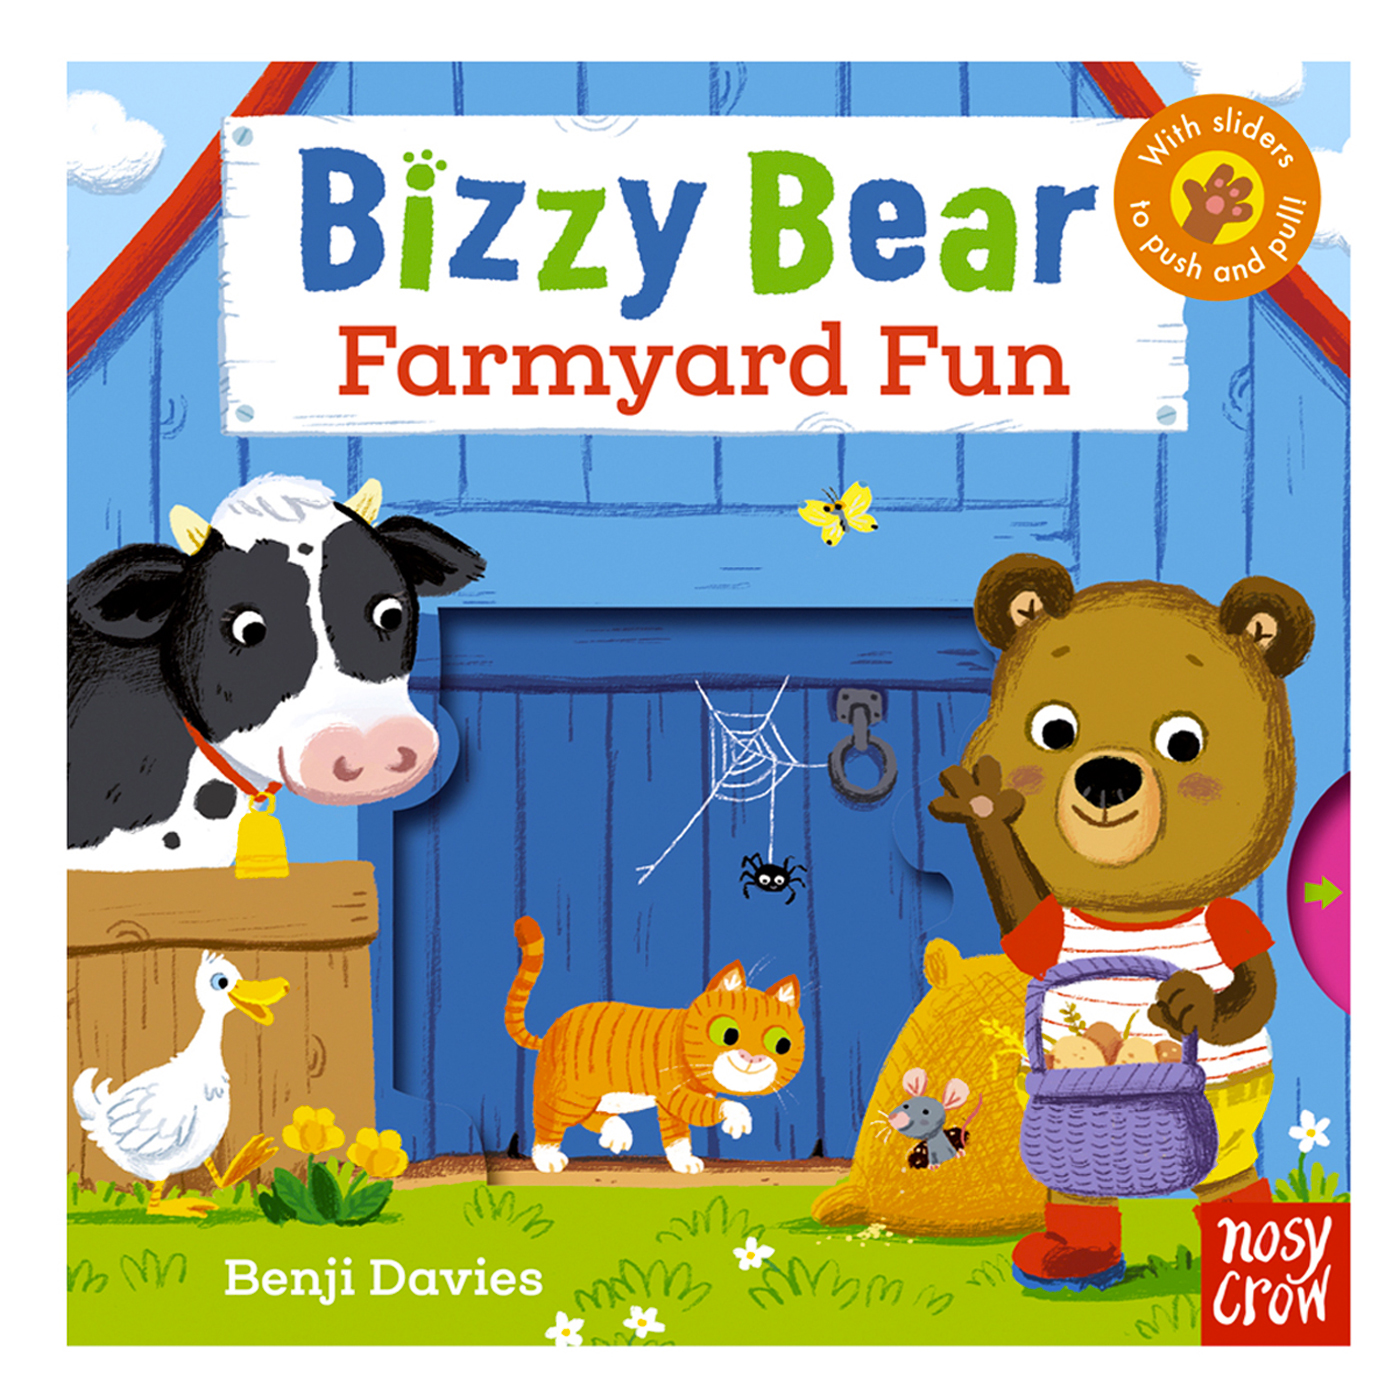  Bizzy Bear: Farmyard Fun